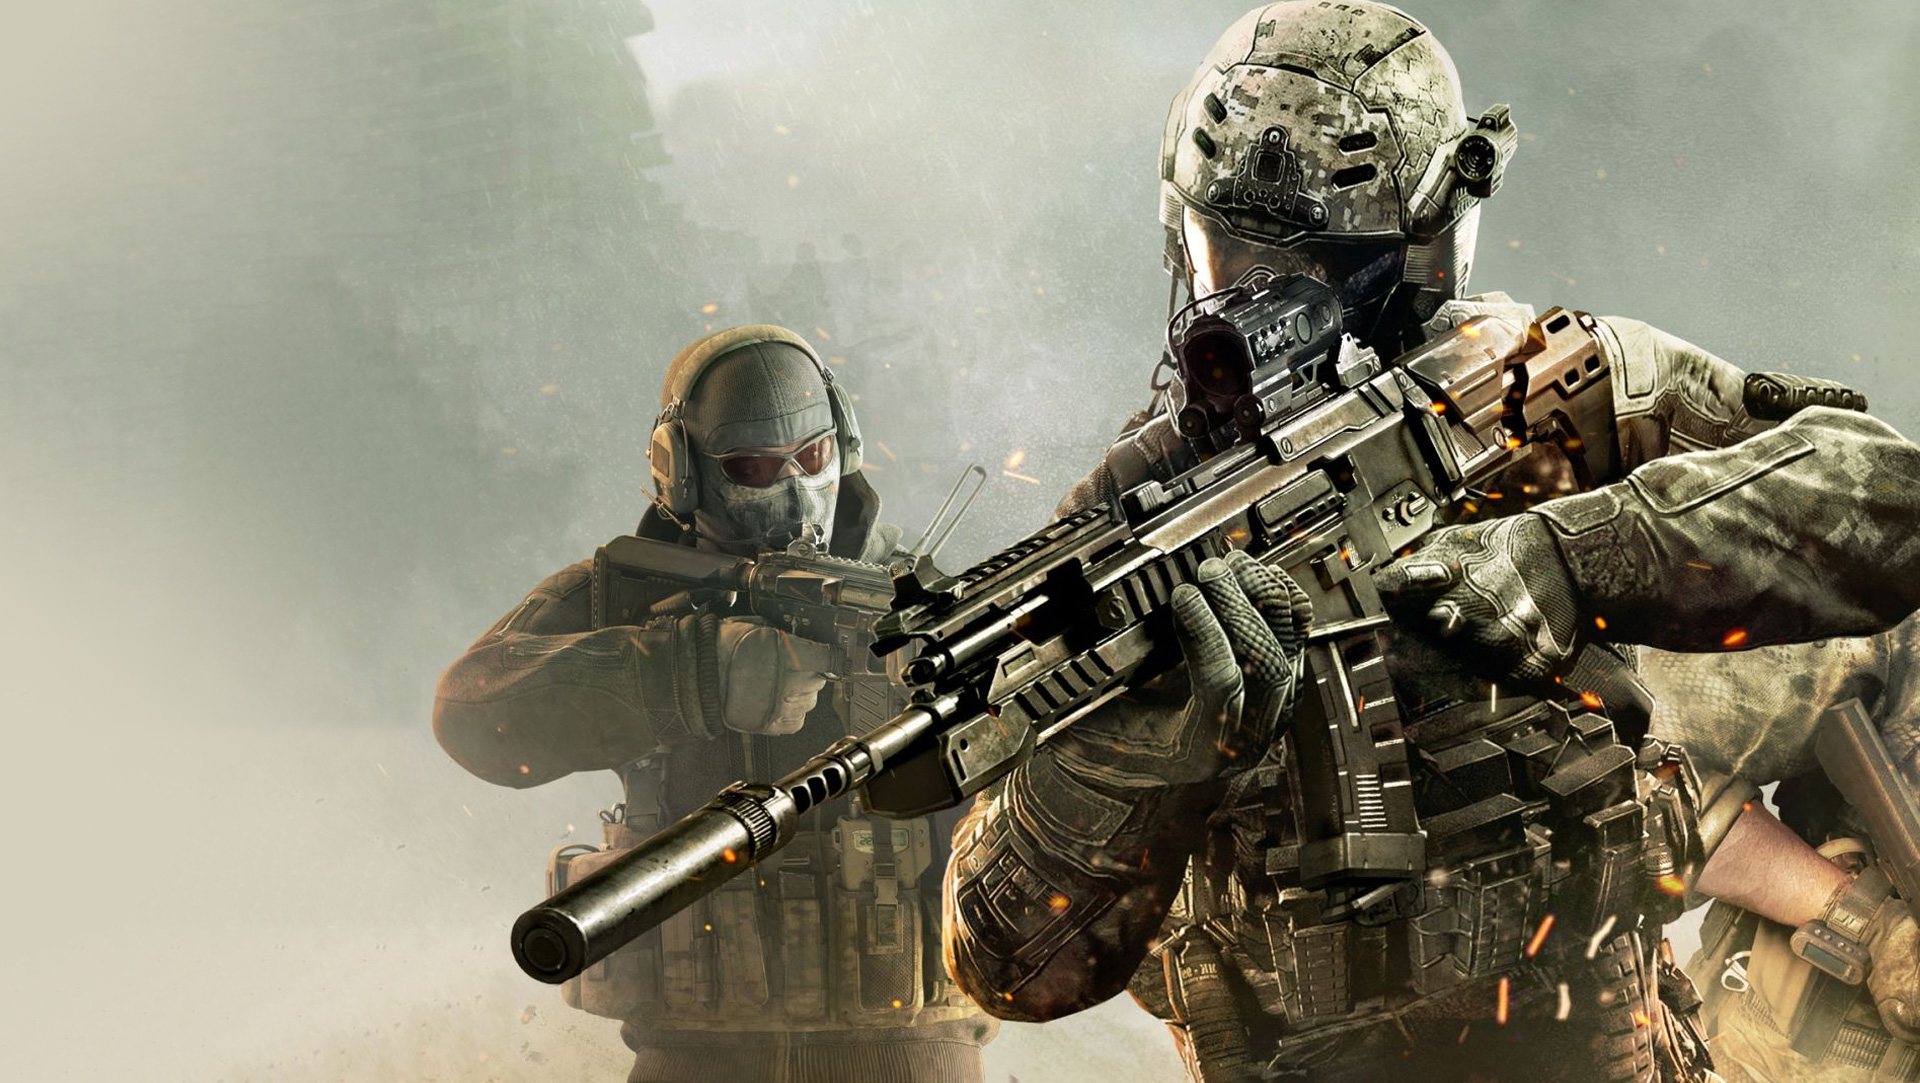 العب Call Of Duty Mobile على الكمبيوتر مع محاكي الأندرويد